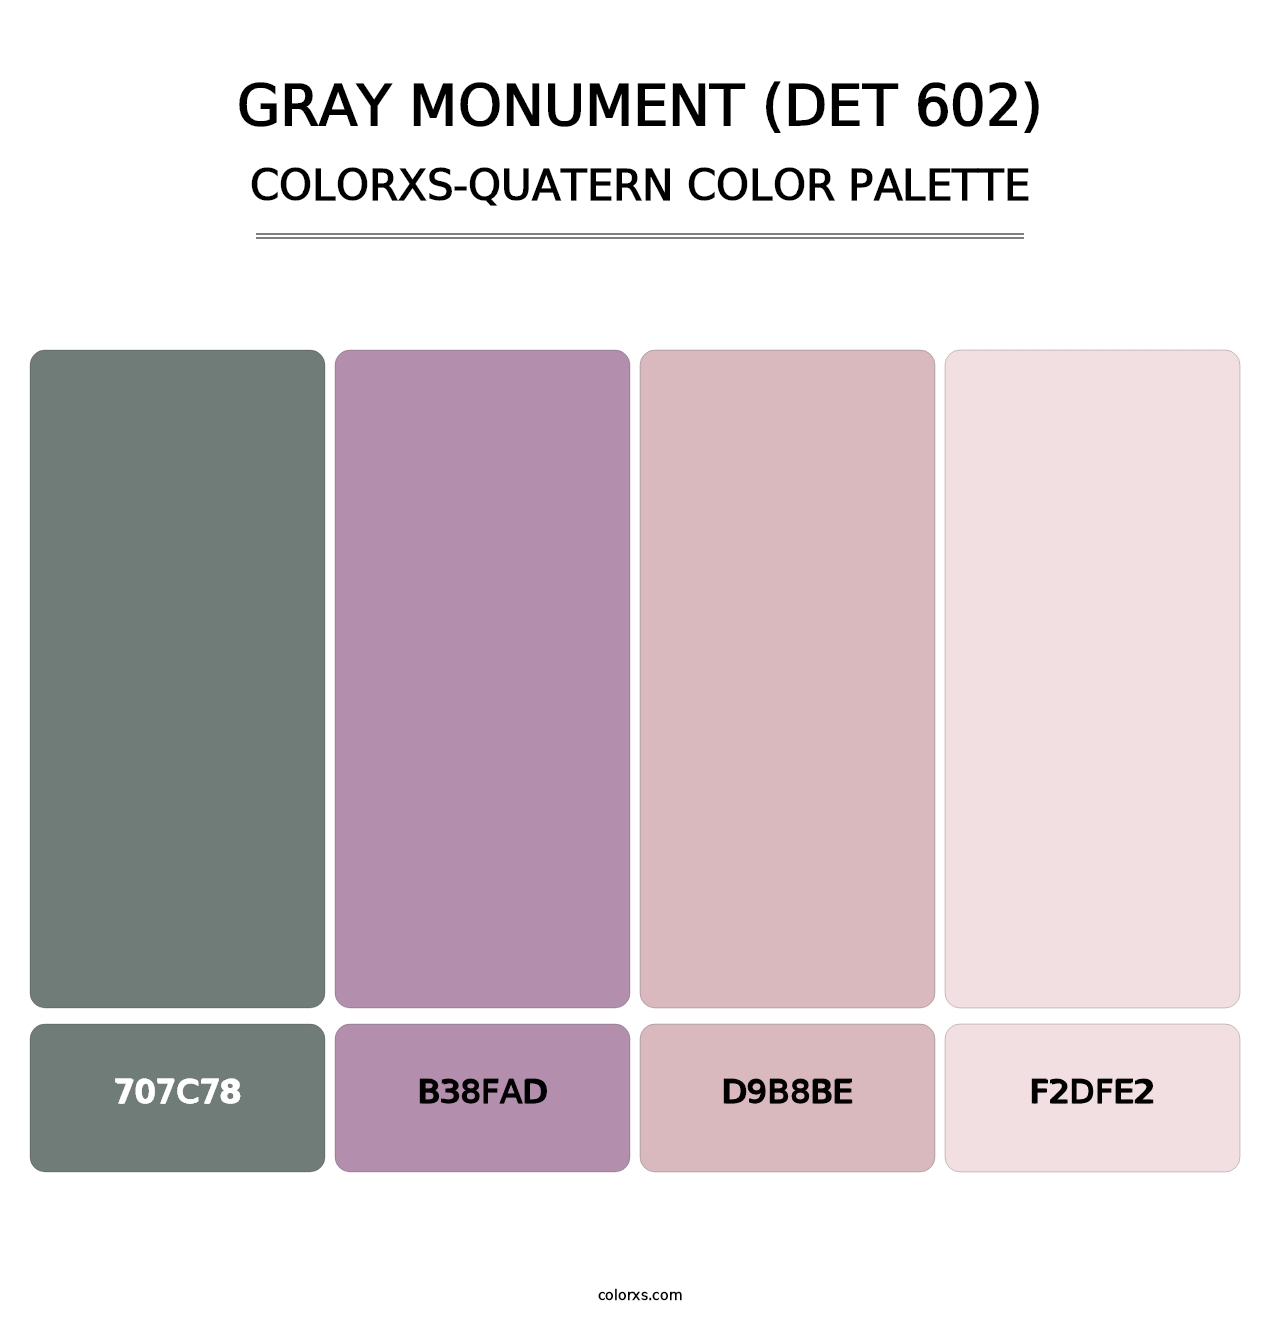 Gray Monument (DET 602) - Colorxs Quatern Palette